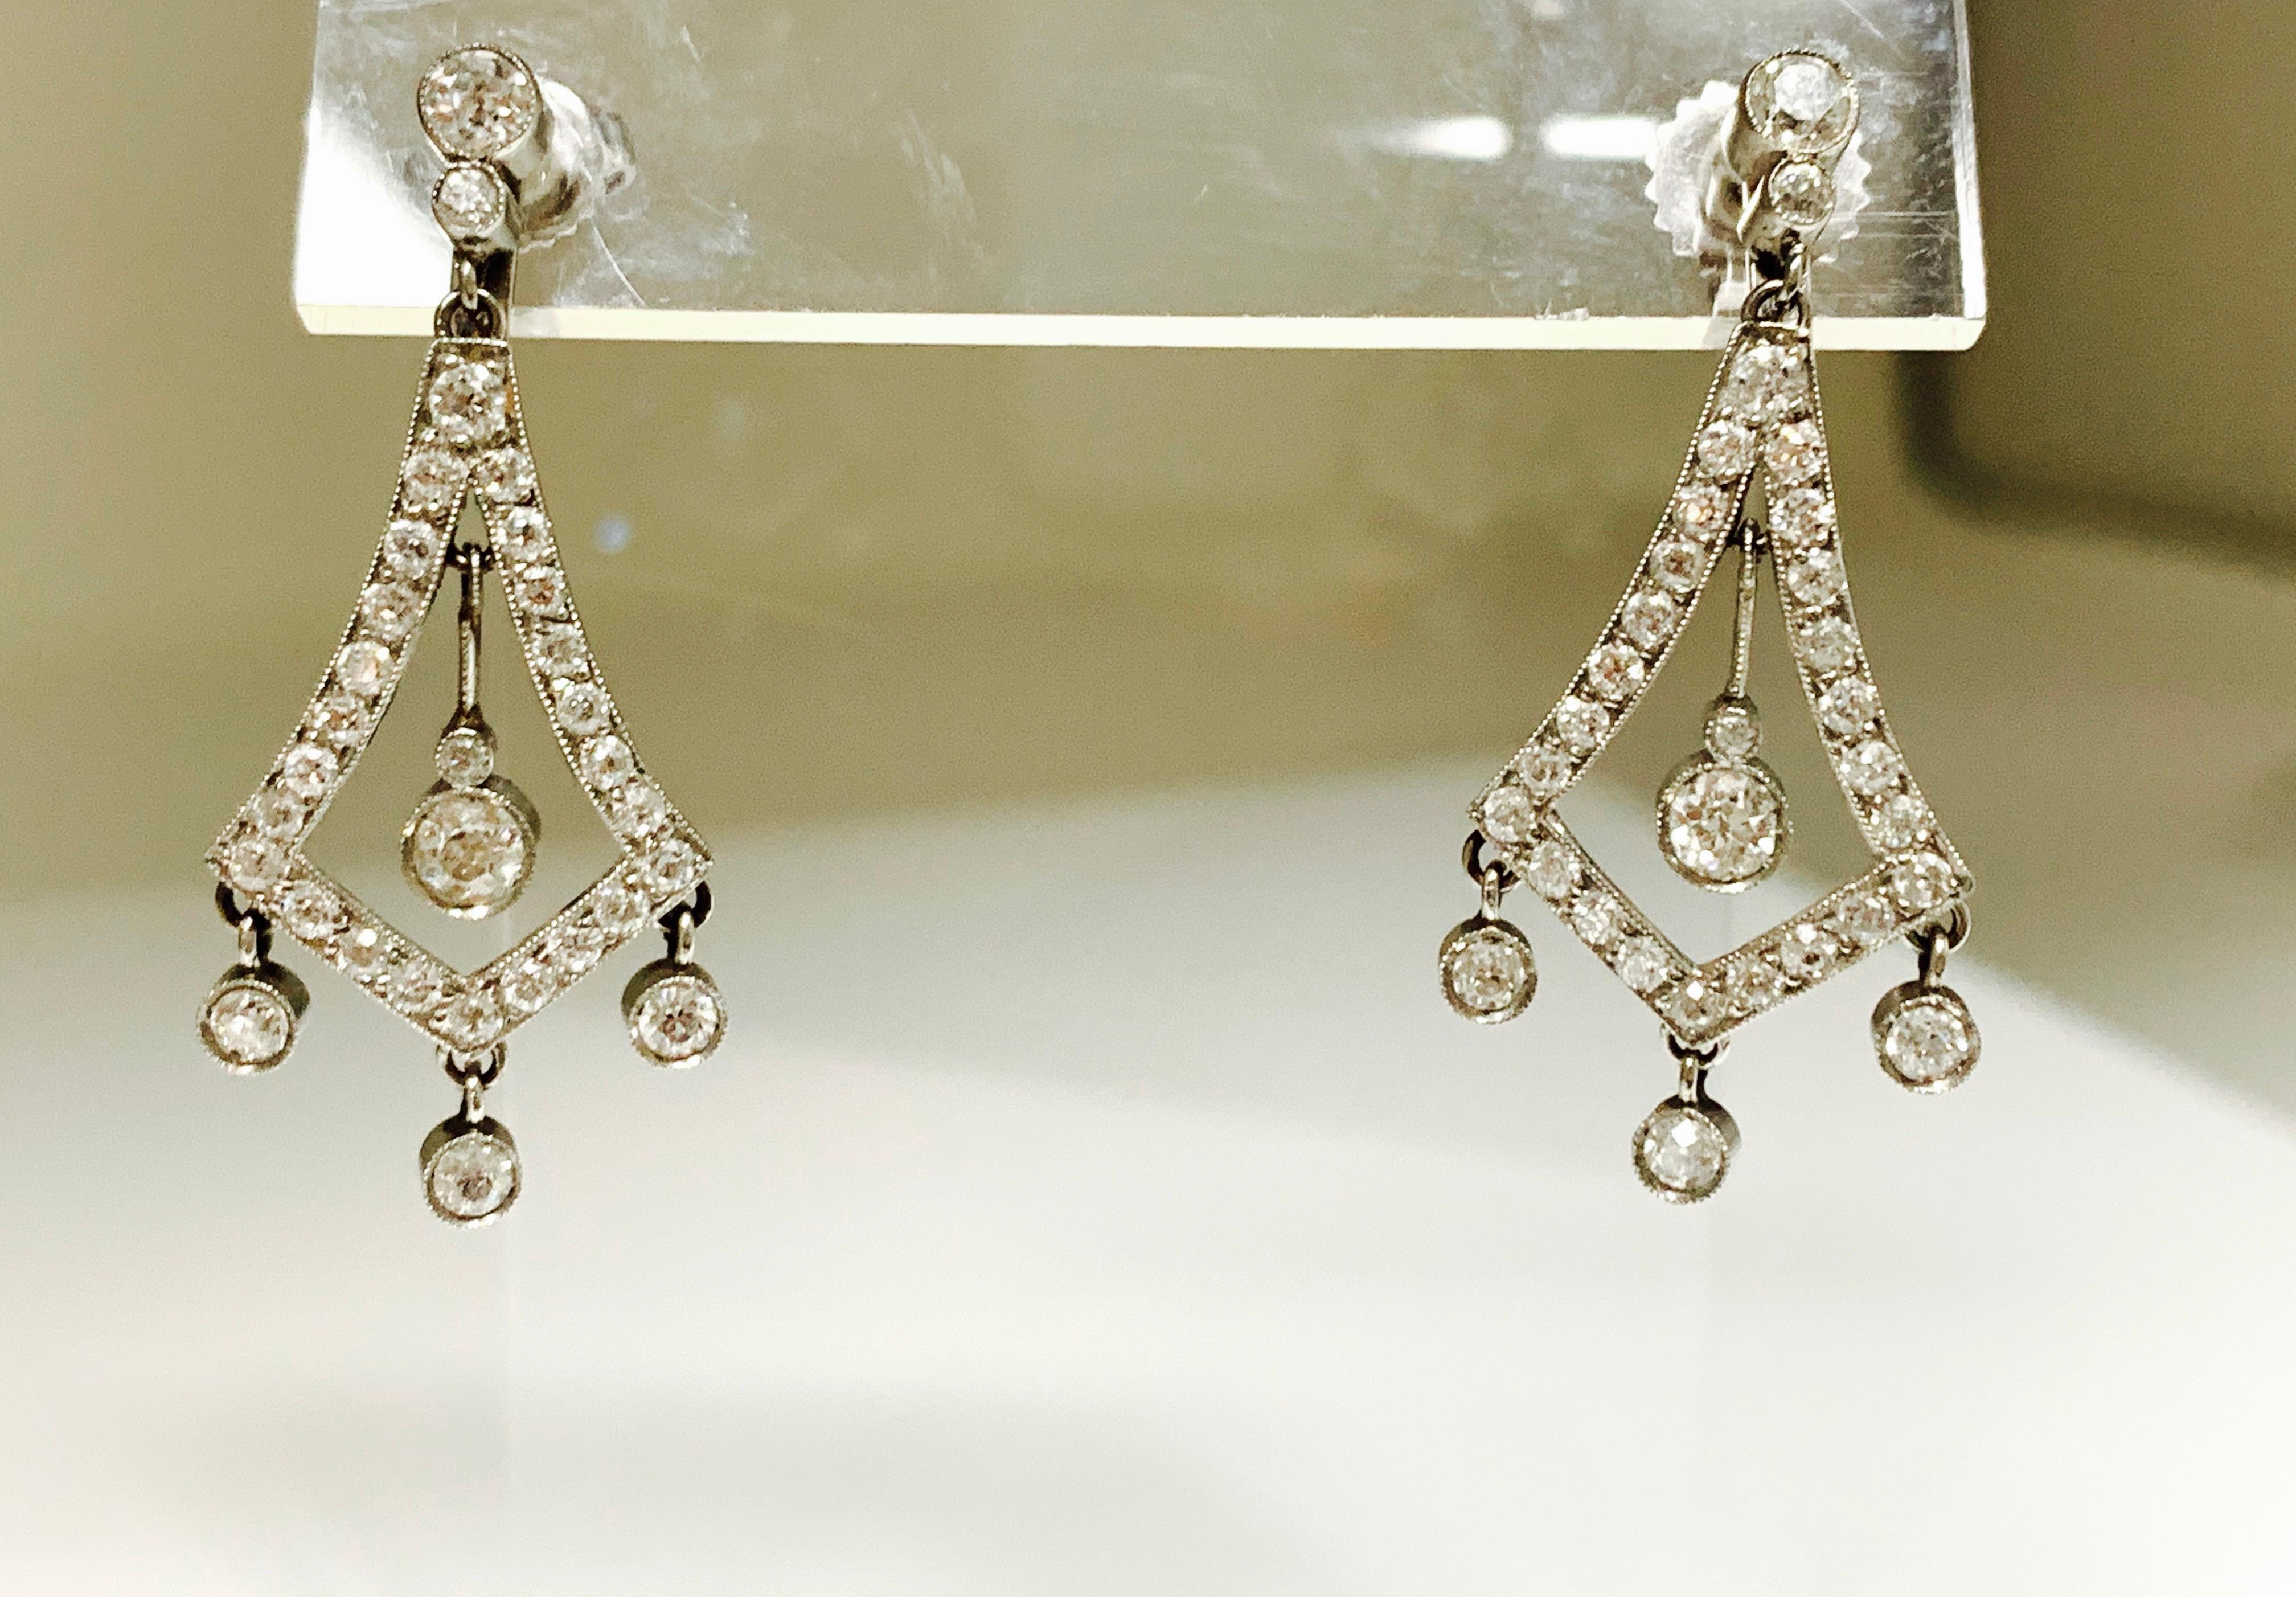 Ces très jolies boucles d'oreilles pendantes sont finement réalisées à la main en platine. 
Les détails sont les suivants : 
Poids du diamant : 2 carats (couleur GH et pureté VS)
Métal : Platine 
Mesures : 1 1/4 pouce de long 

